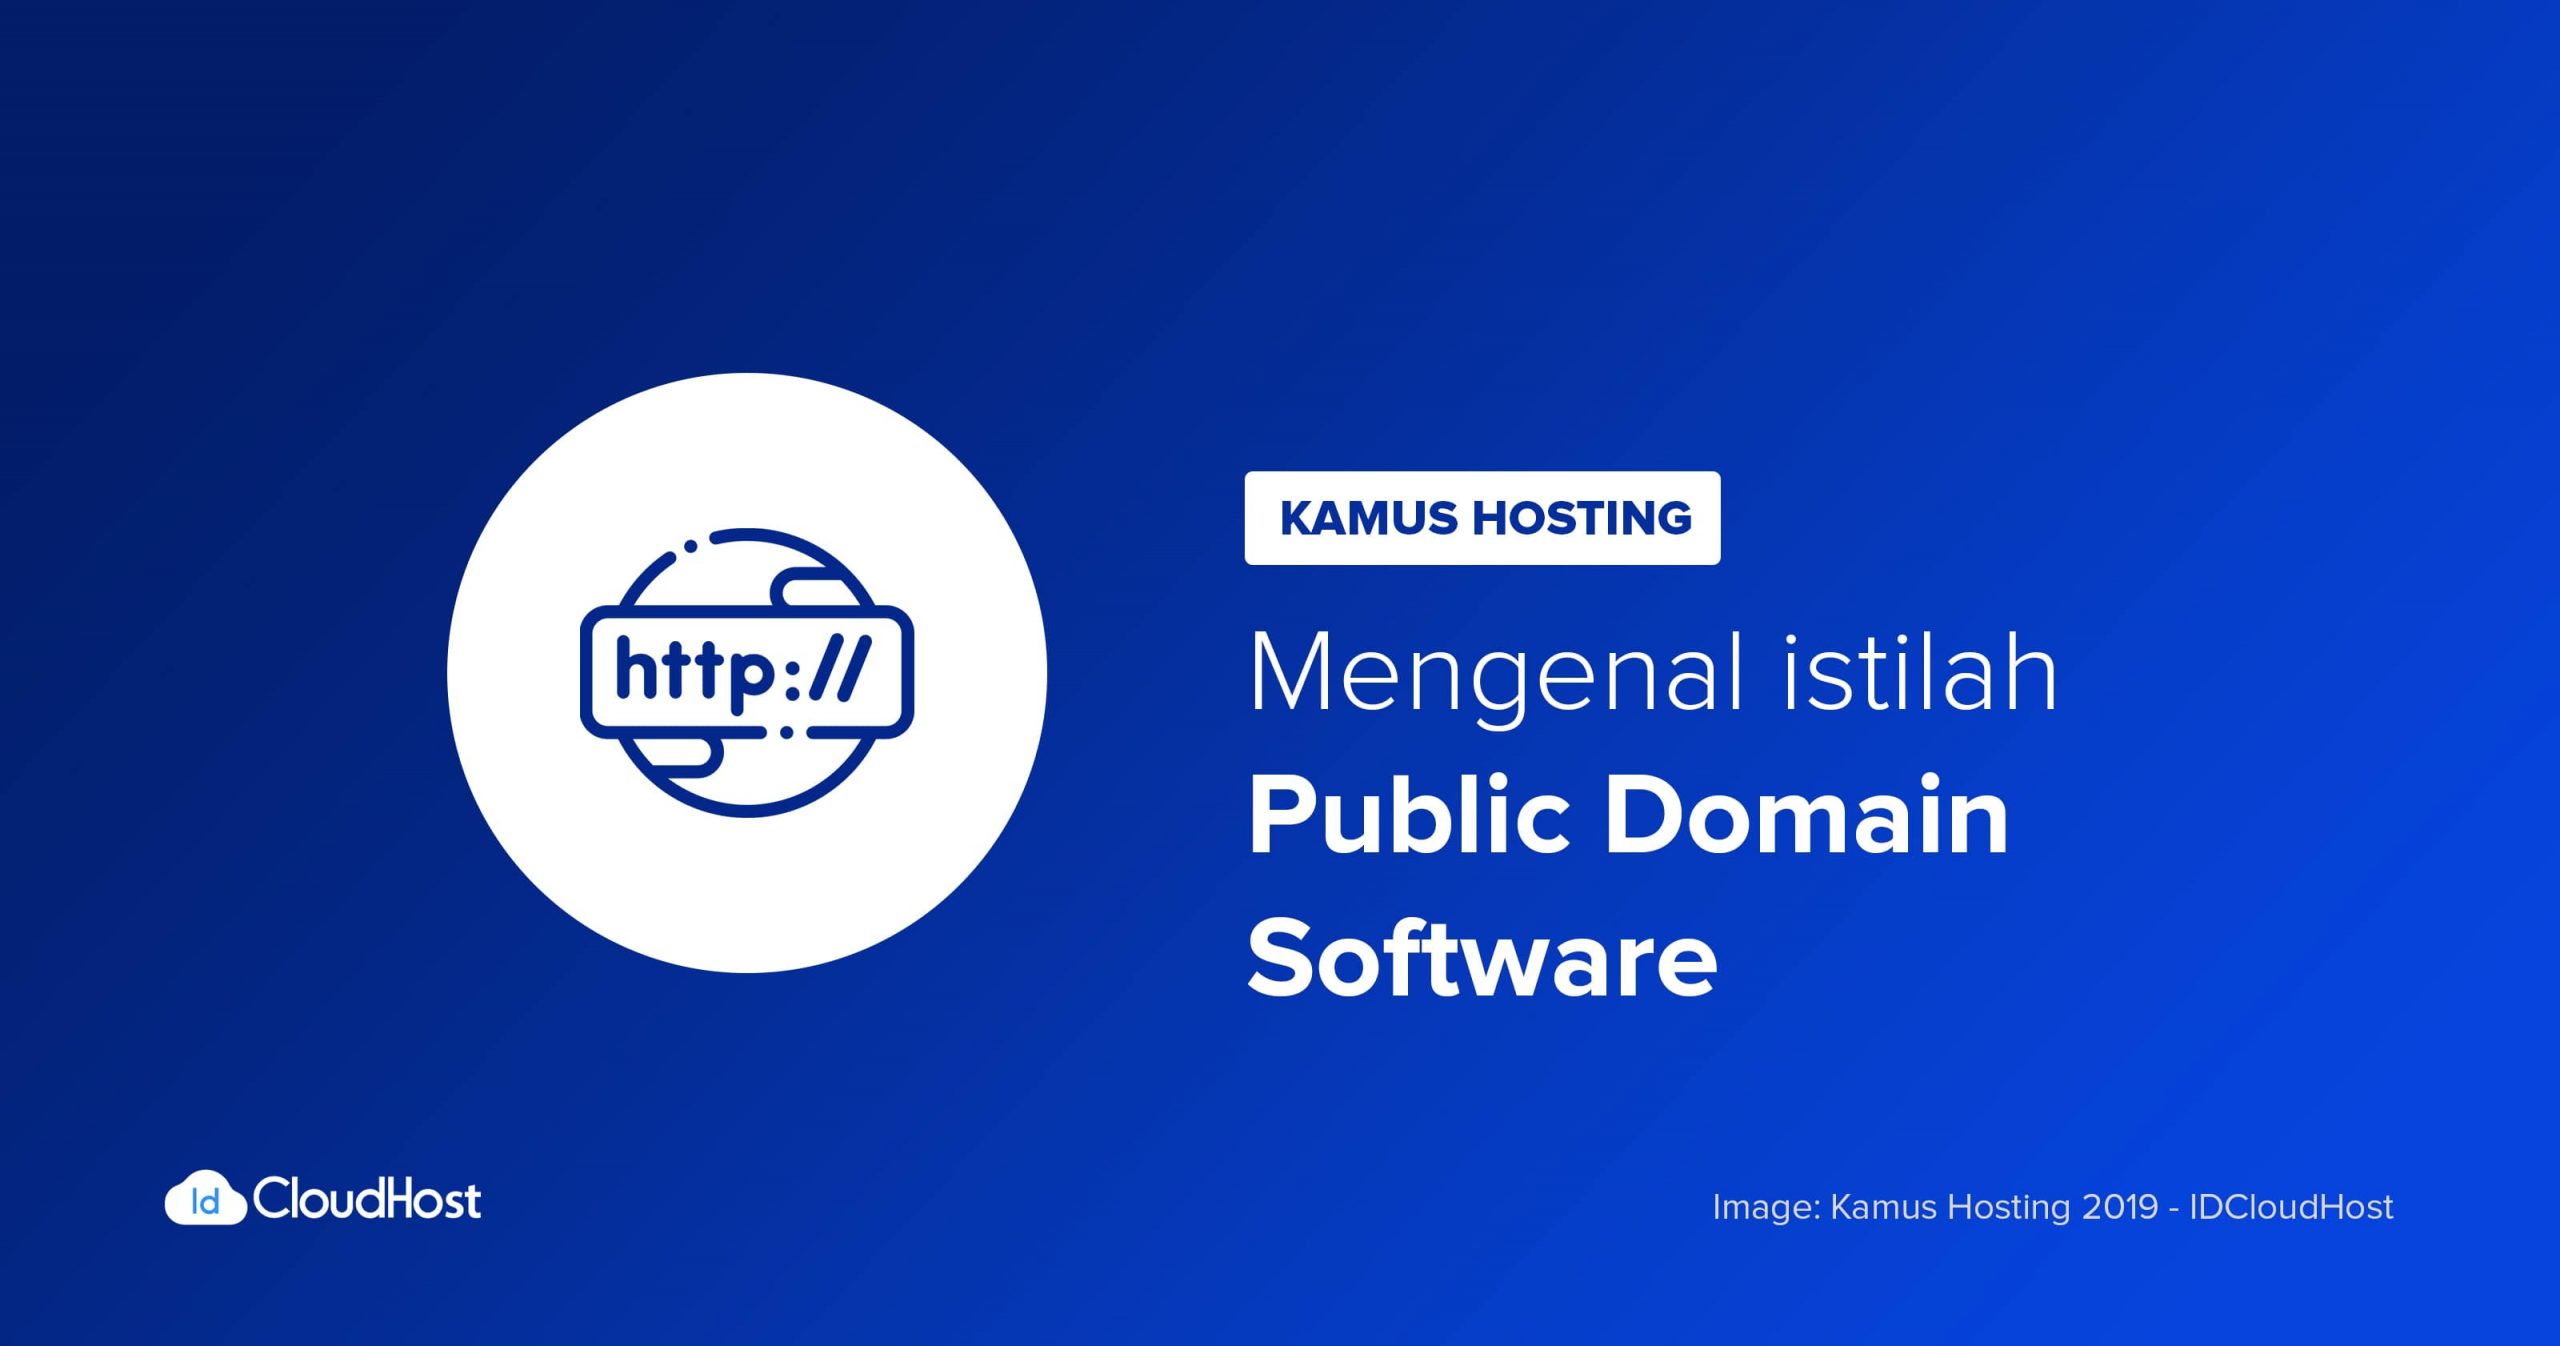 Public domain software